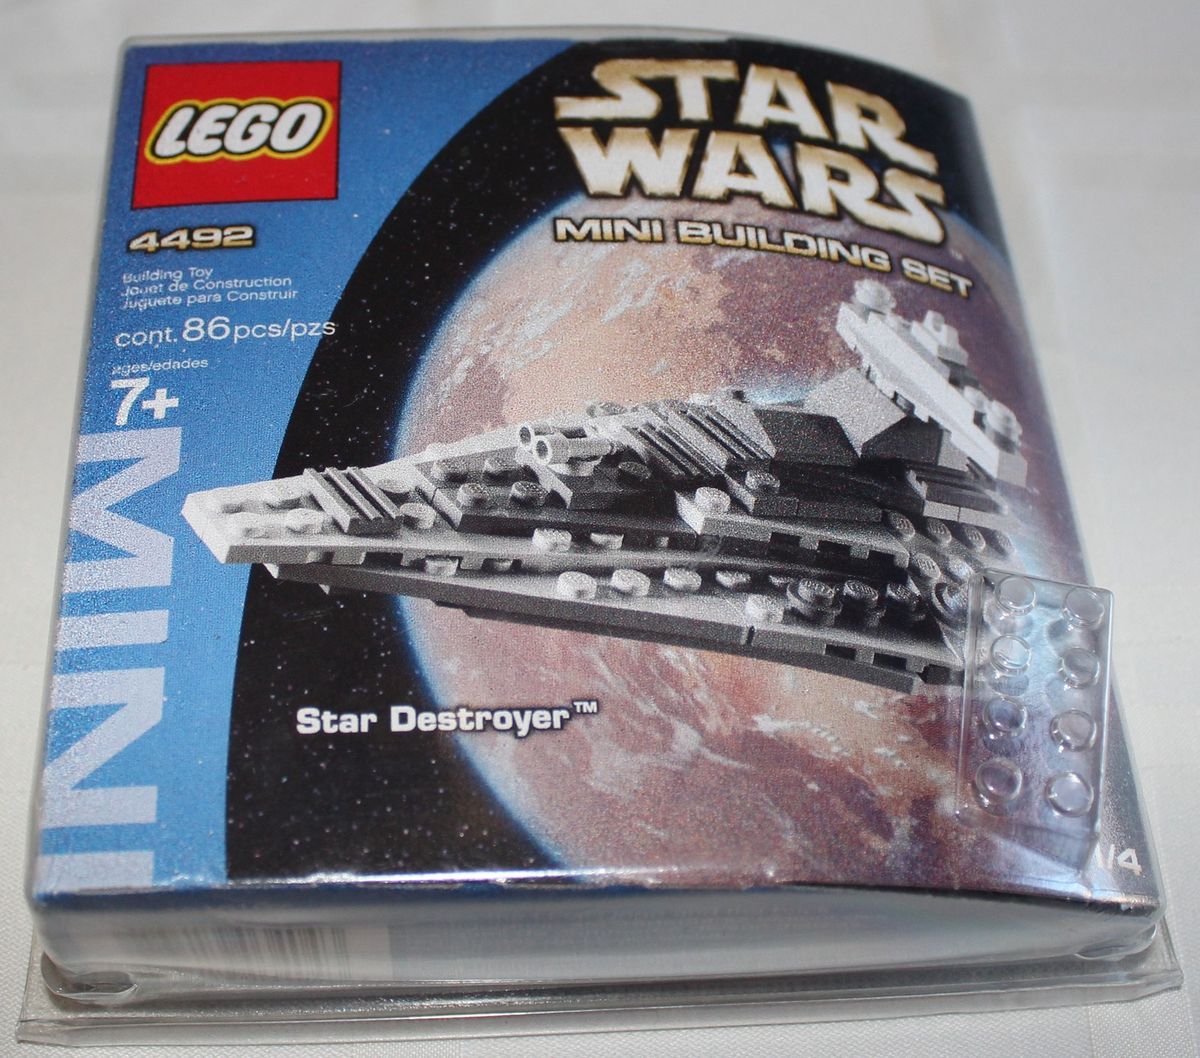 Lego 4492 Star Wars Mini Building Set Star Destroyer Complete 2004